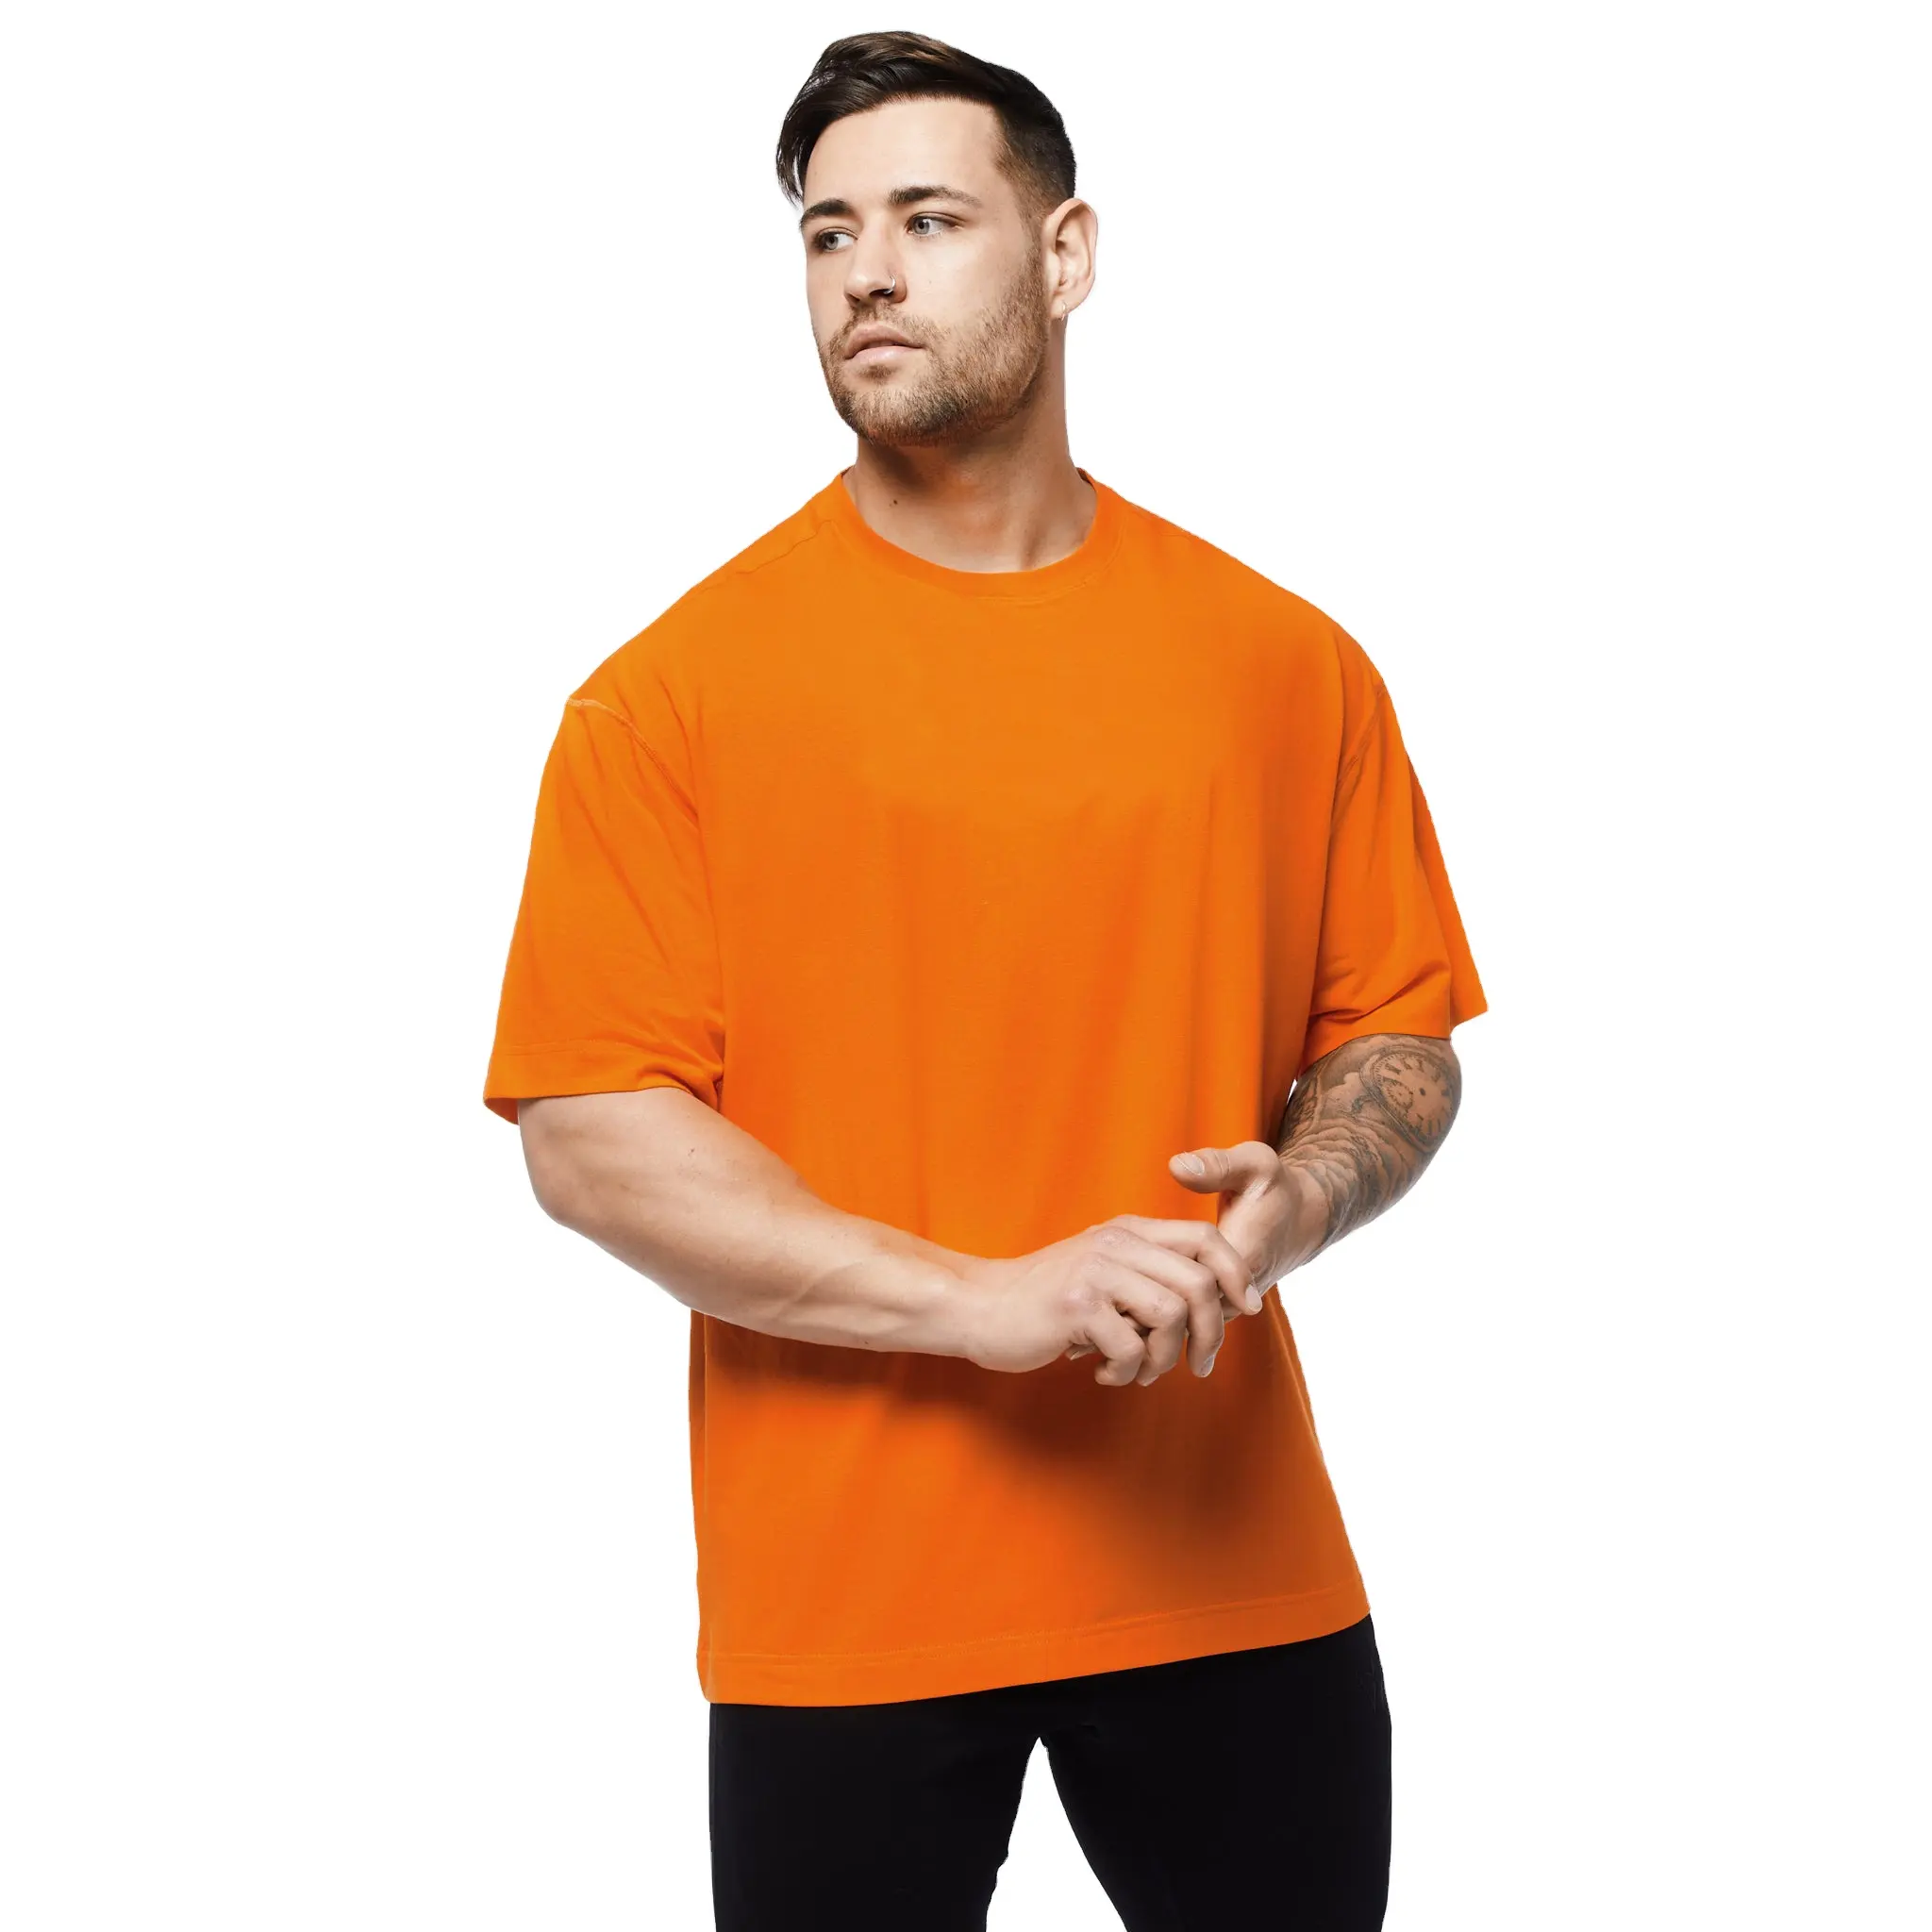 Kaus Ukuran Besar Katun 100% Tidak Gratis Sampel/Ukuran Campur Warna Kaus Kustom Cetak Logo Pria/Kaus Jatuh